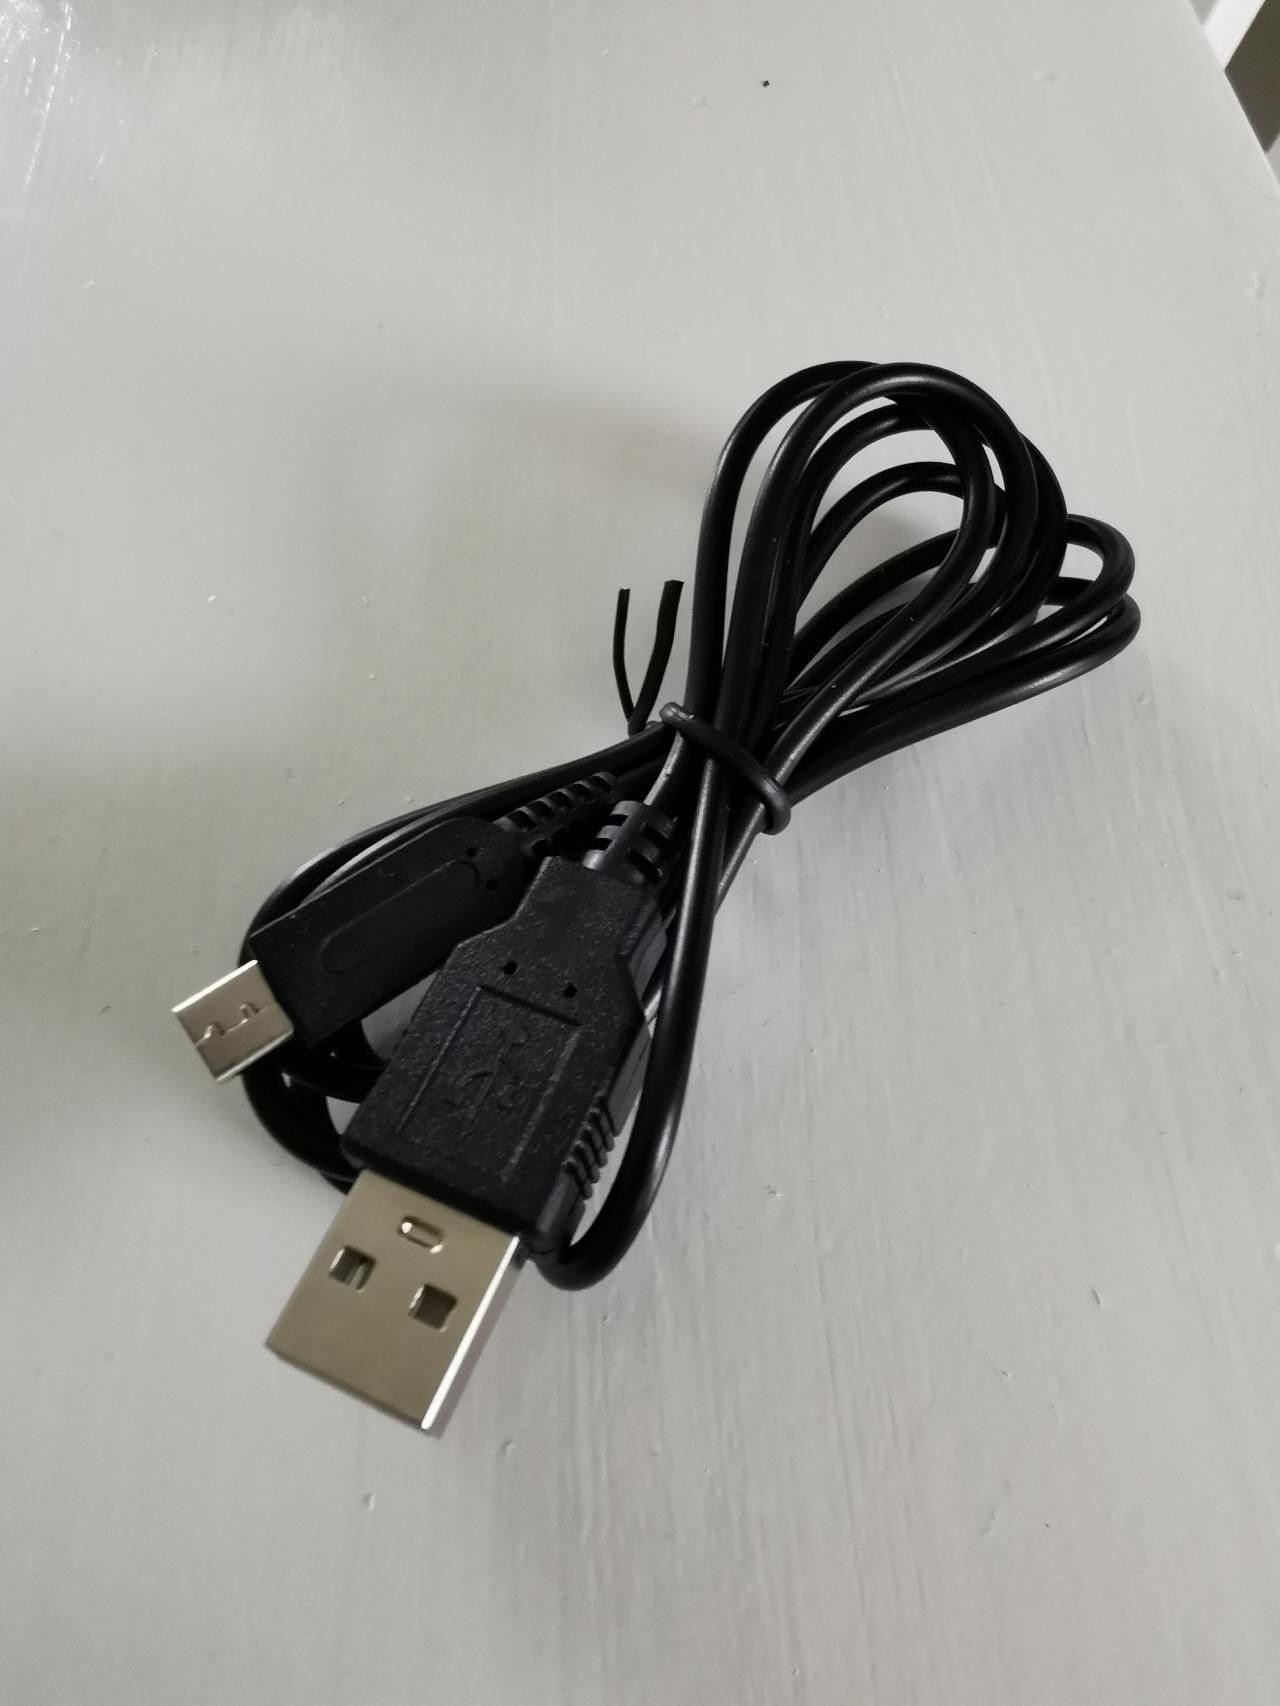 USB ladekabel for Nintendo DS Lite